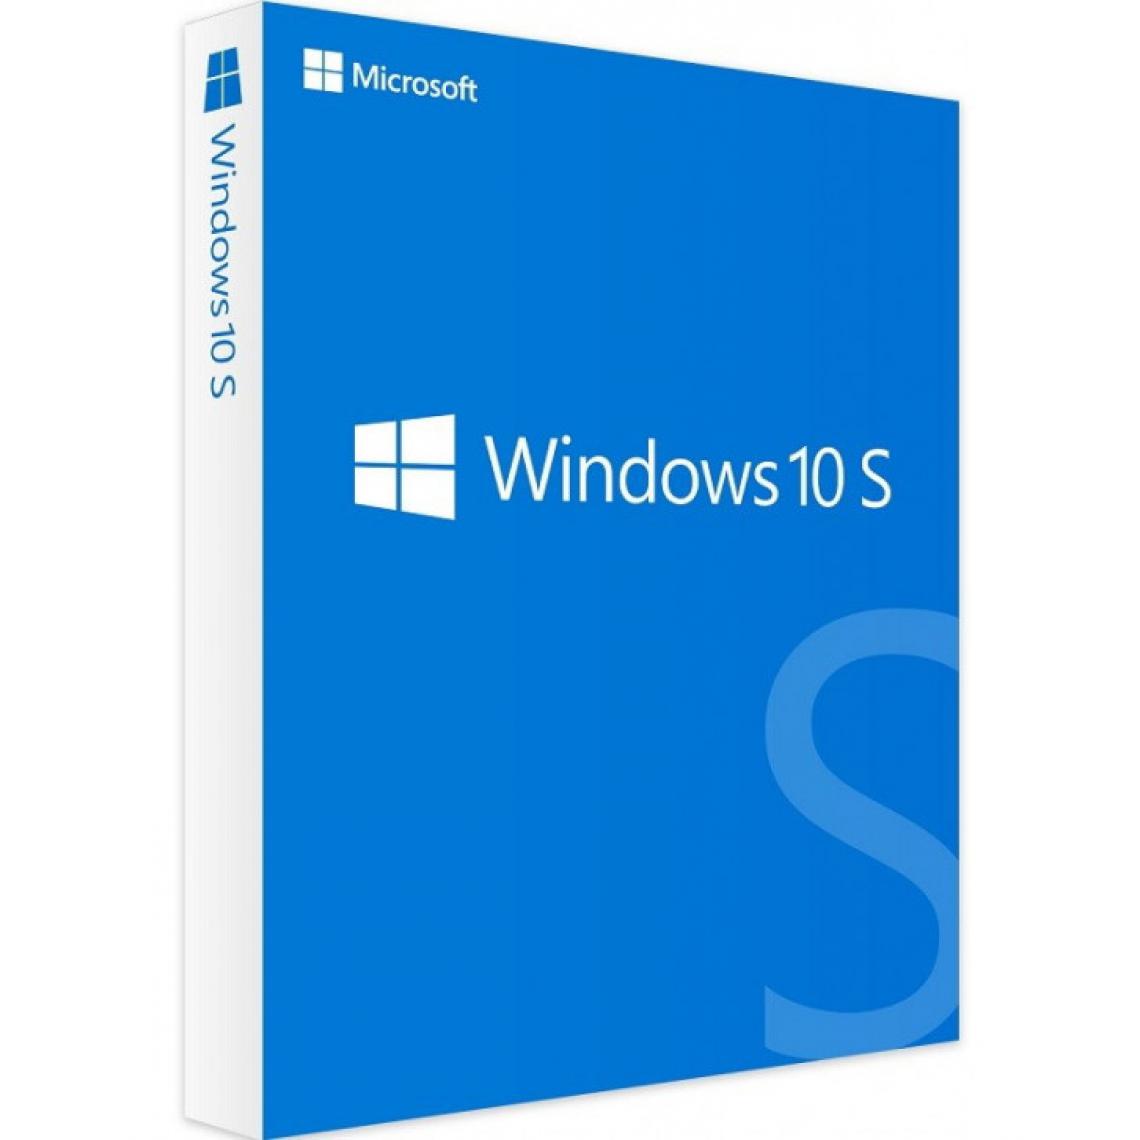 Microsoft - Microsoft Windows 10 S - 32 / 64 bits - Clé licence à télécharger - Livraison rapide 7/7j - Windows 10